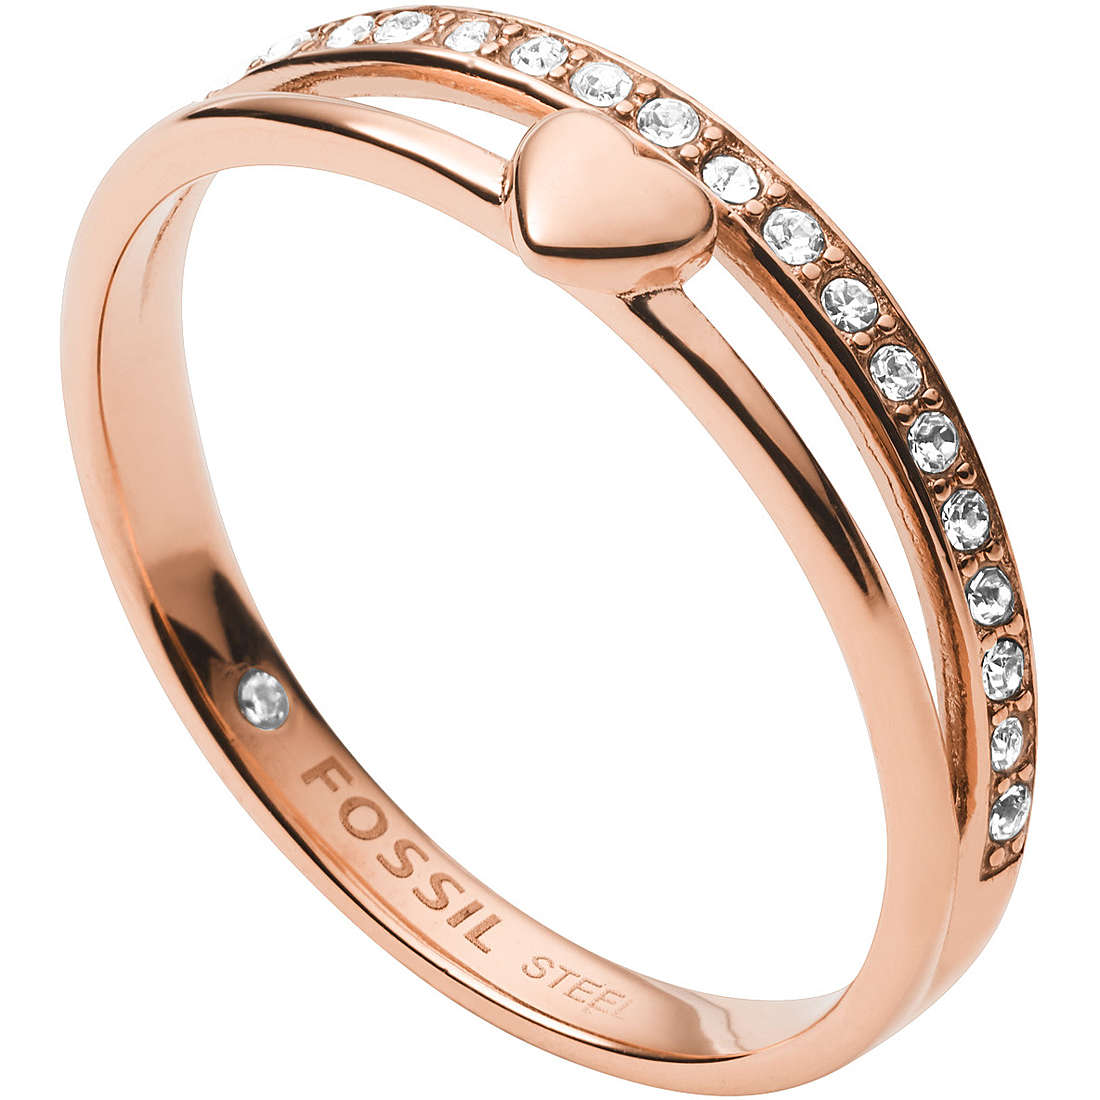 anello donna gioielli Fossil JF03460791505